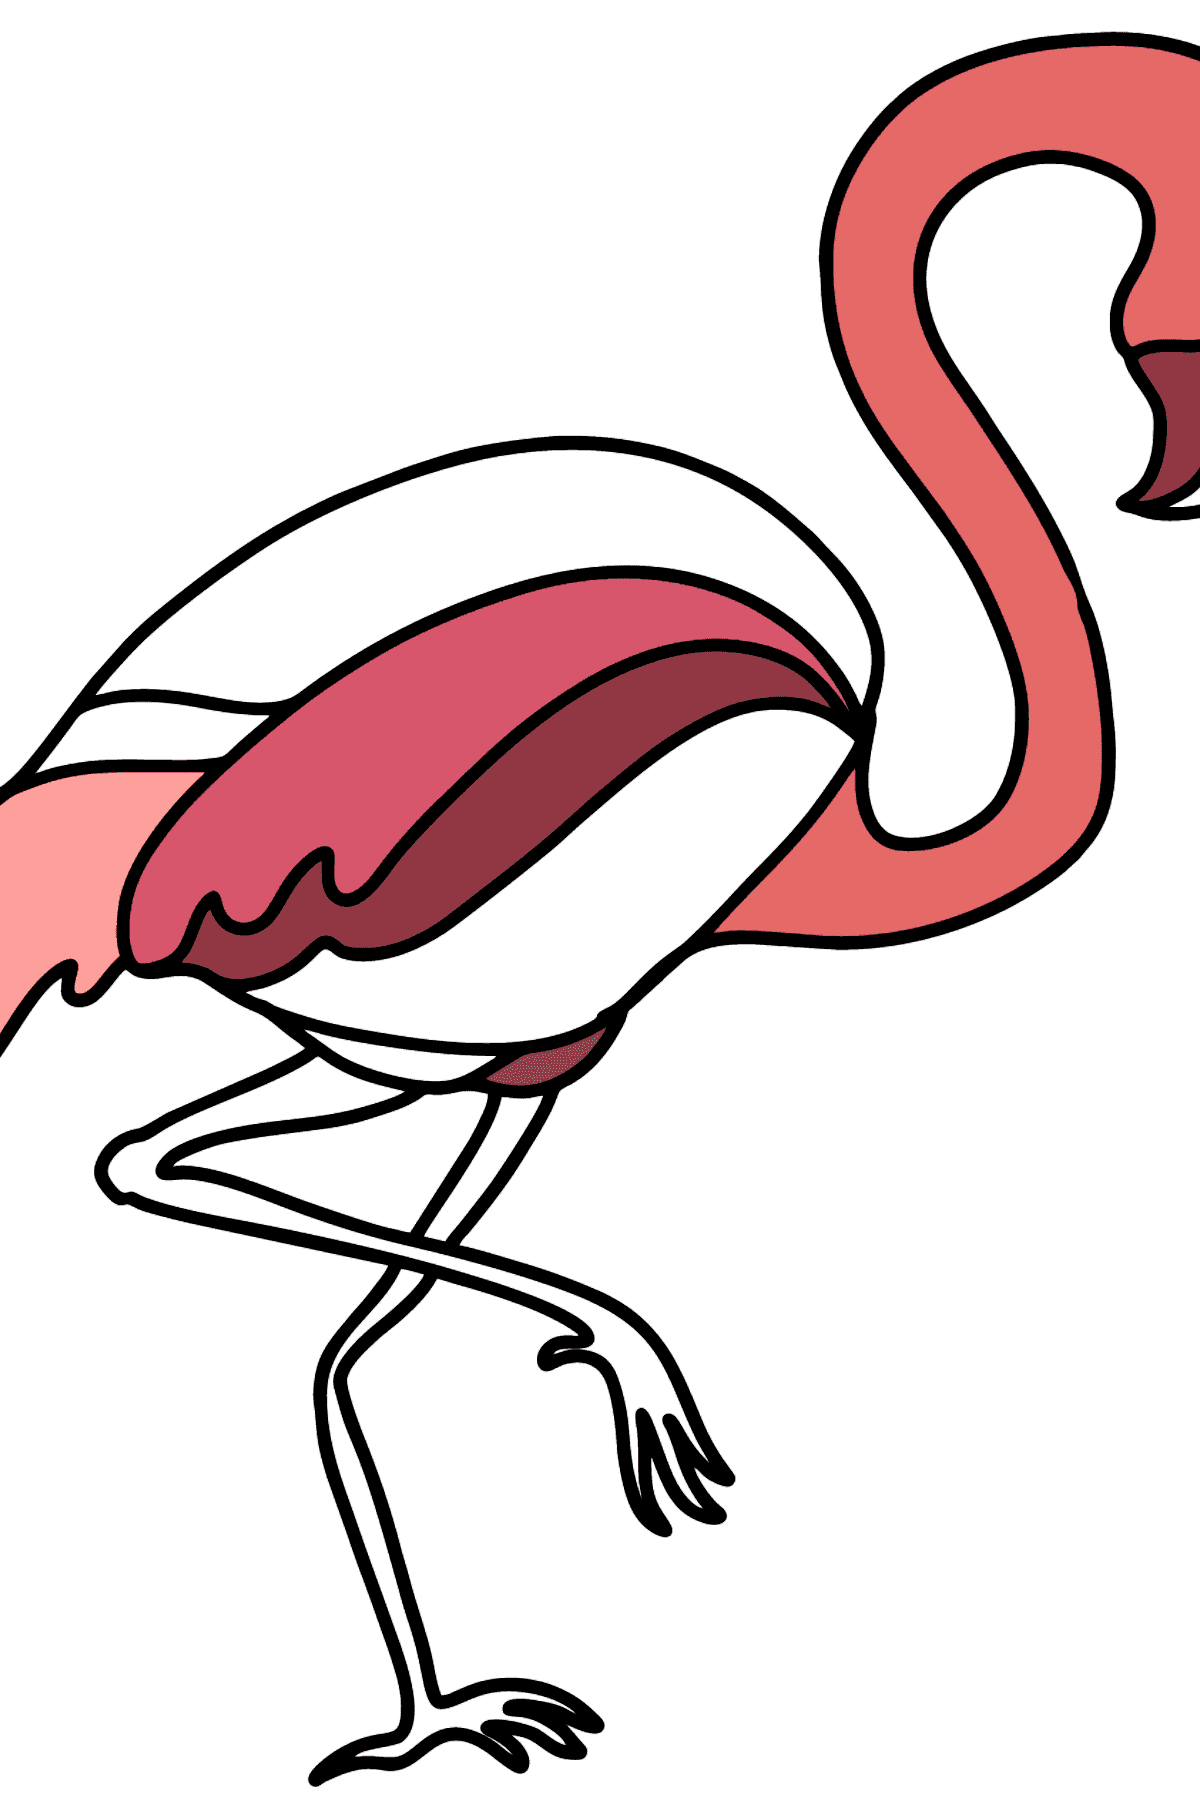 Flamingo boyama sayfası - Boyamalar çocuklar için